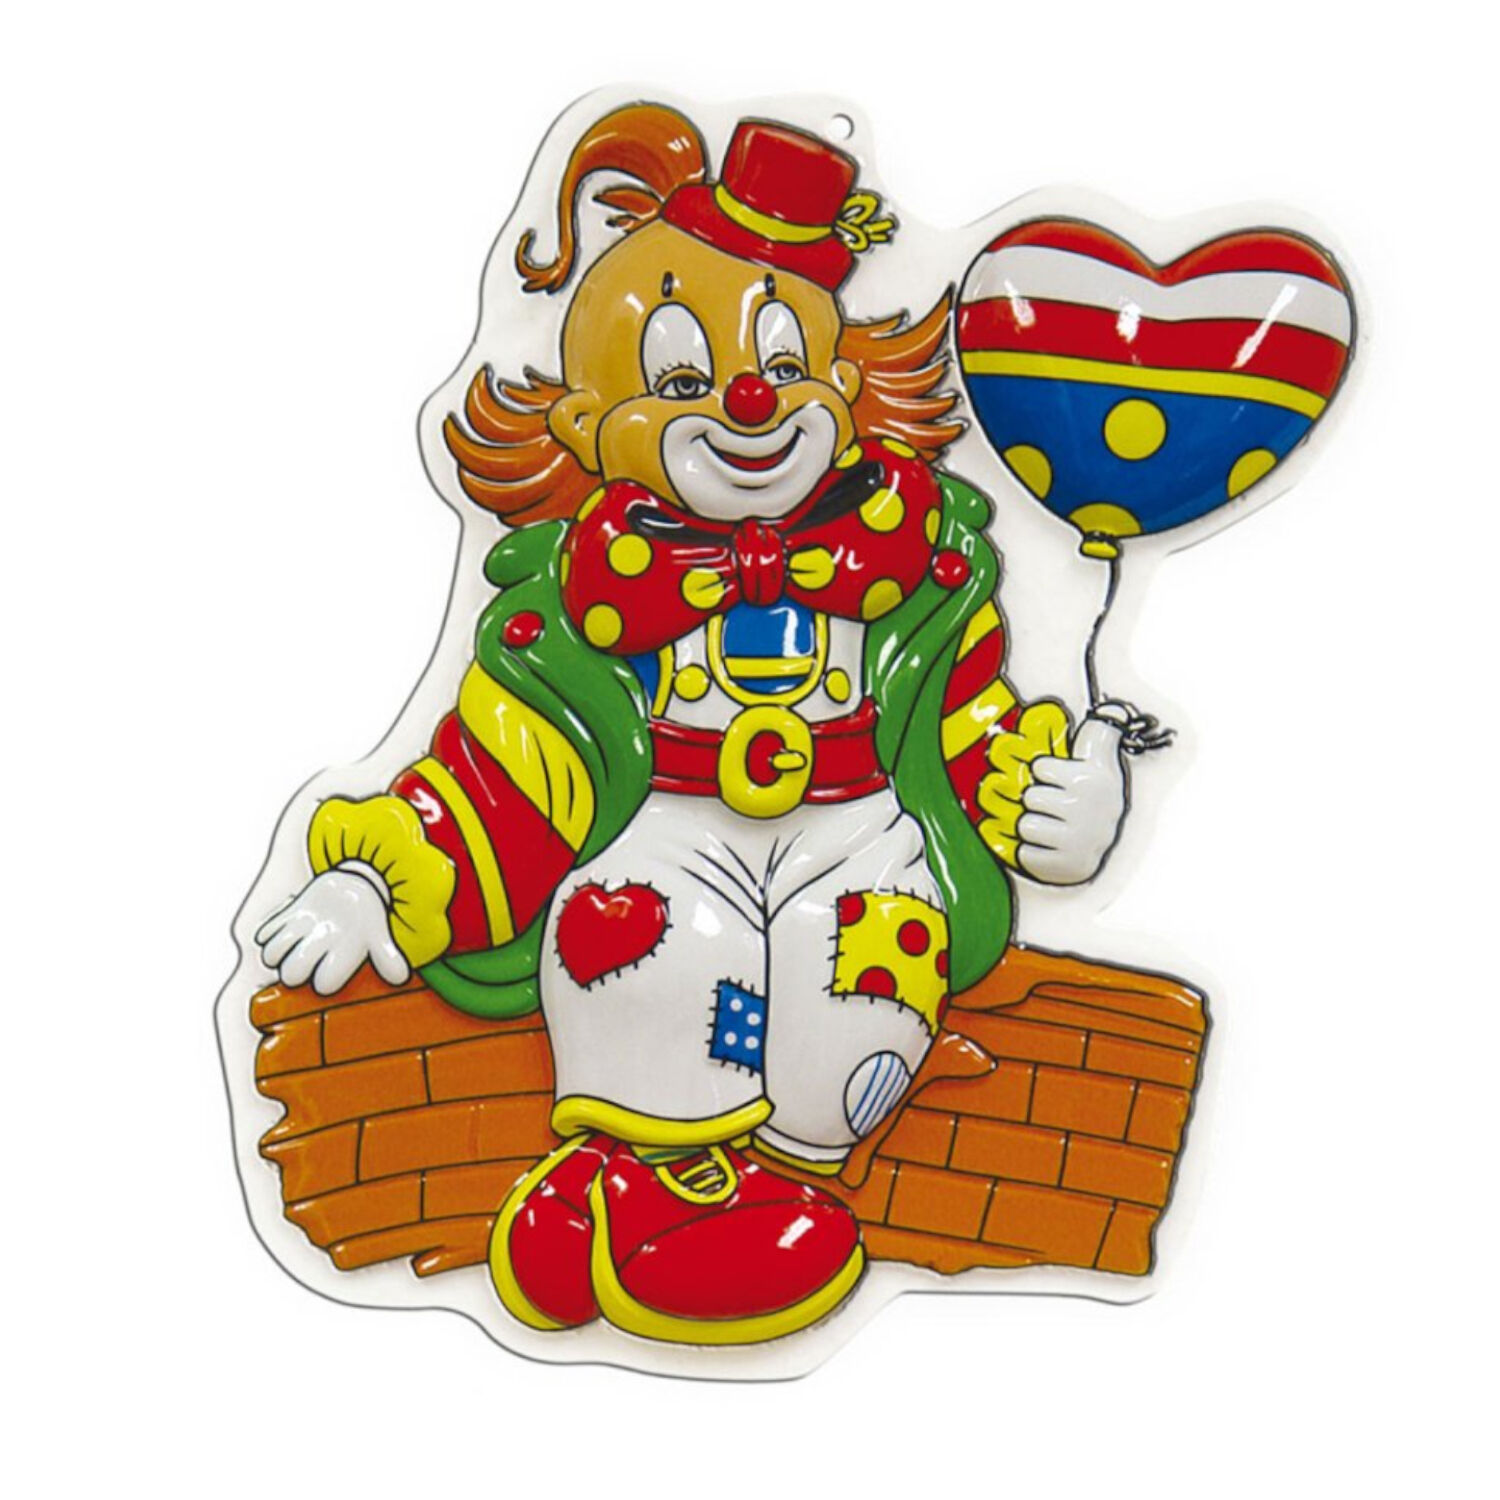 NEU Wand-Deko Clown, Herzballon, 1 Stk. Ca. 47cm